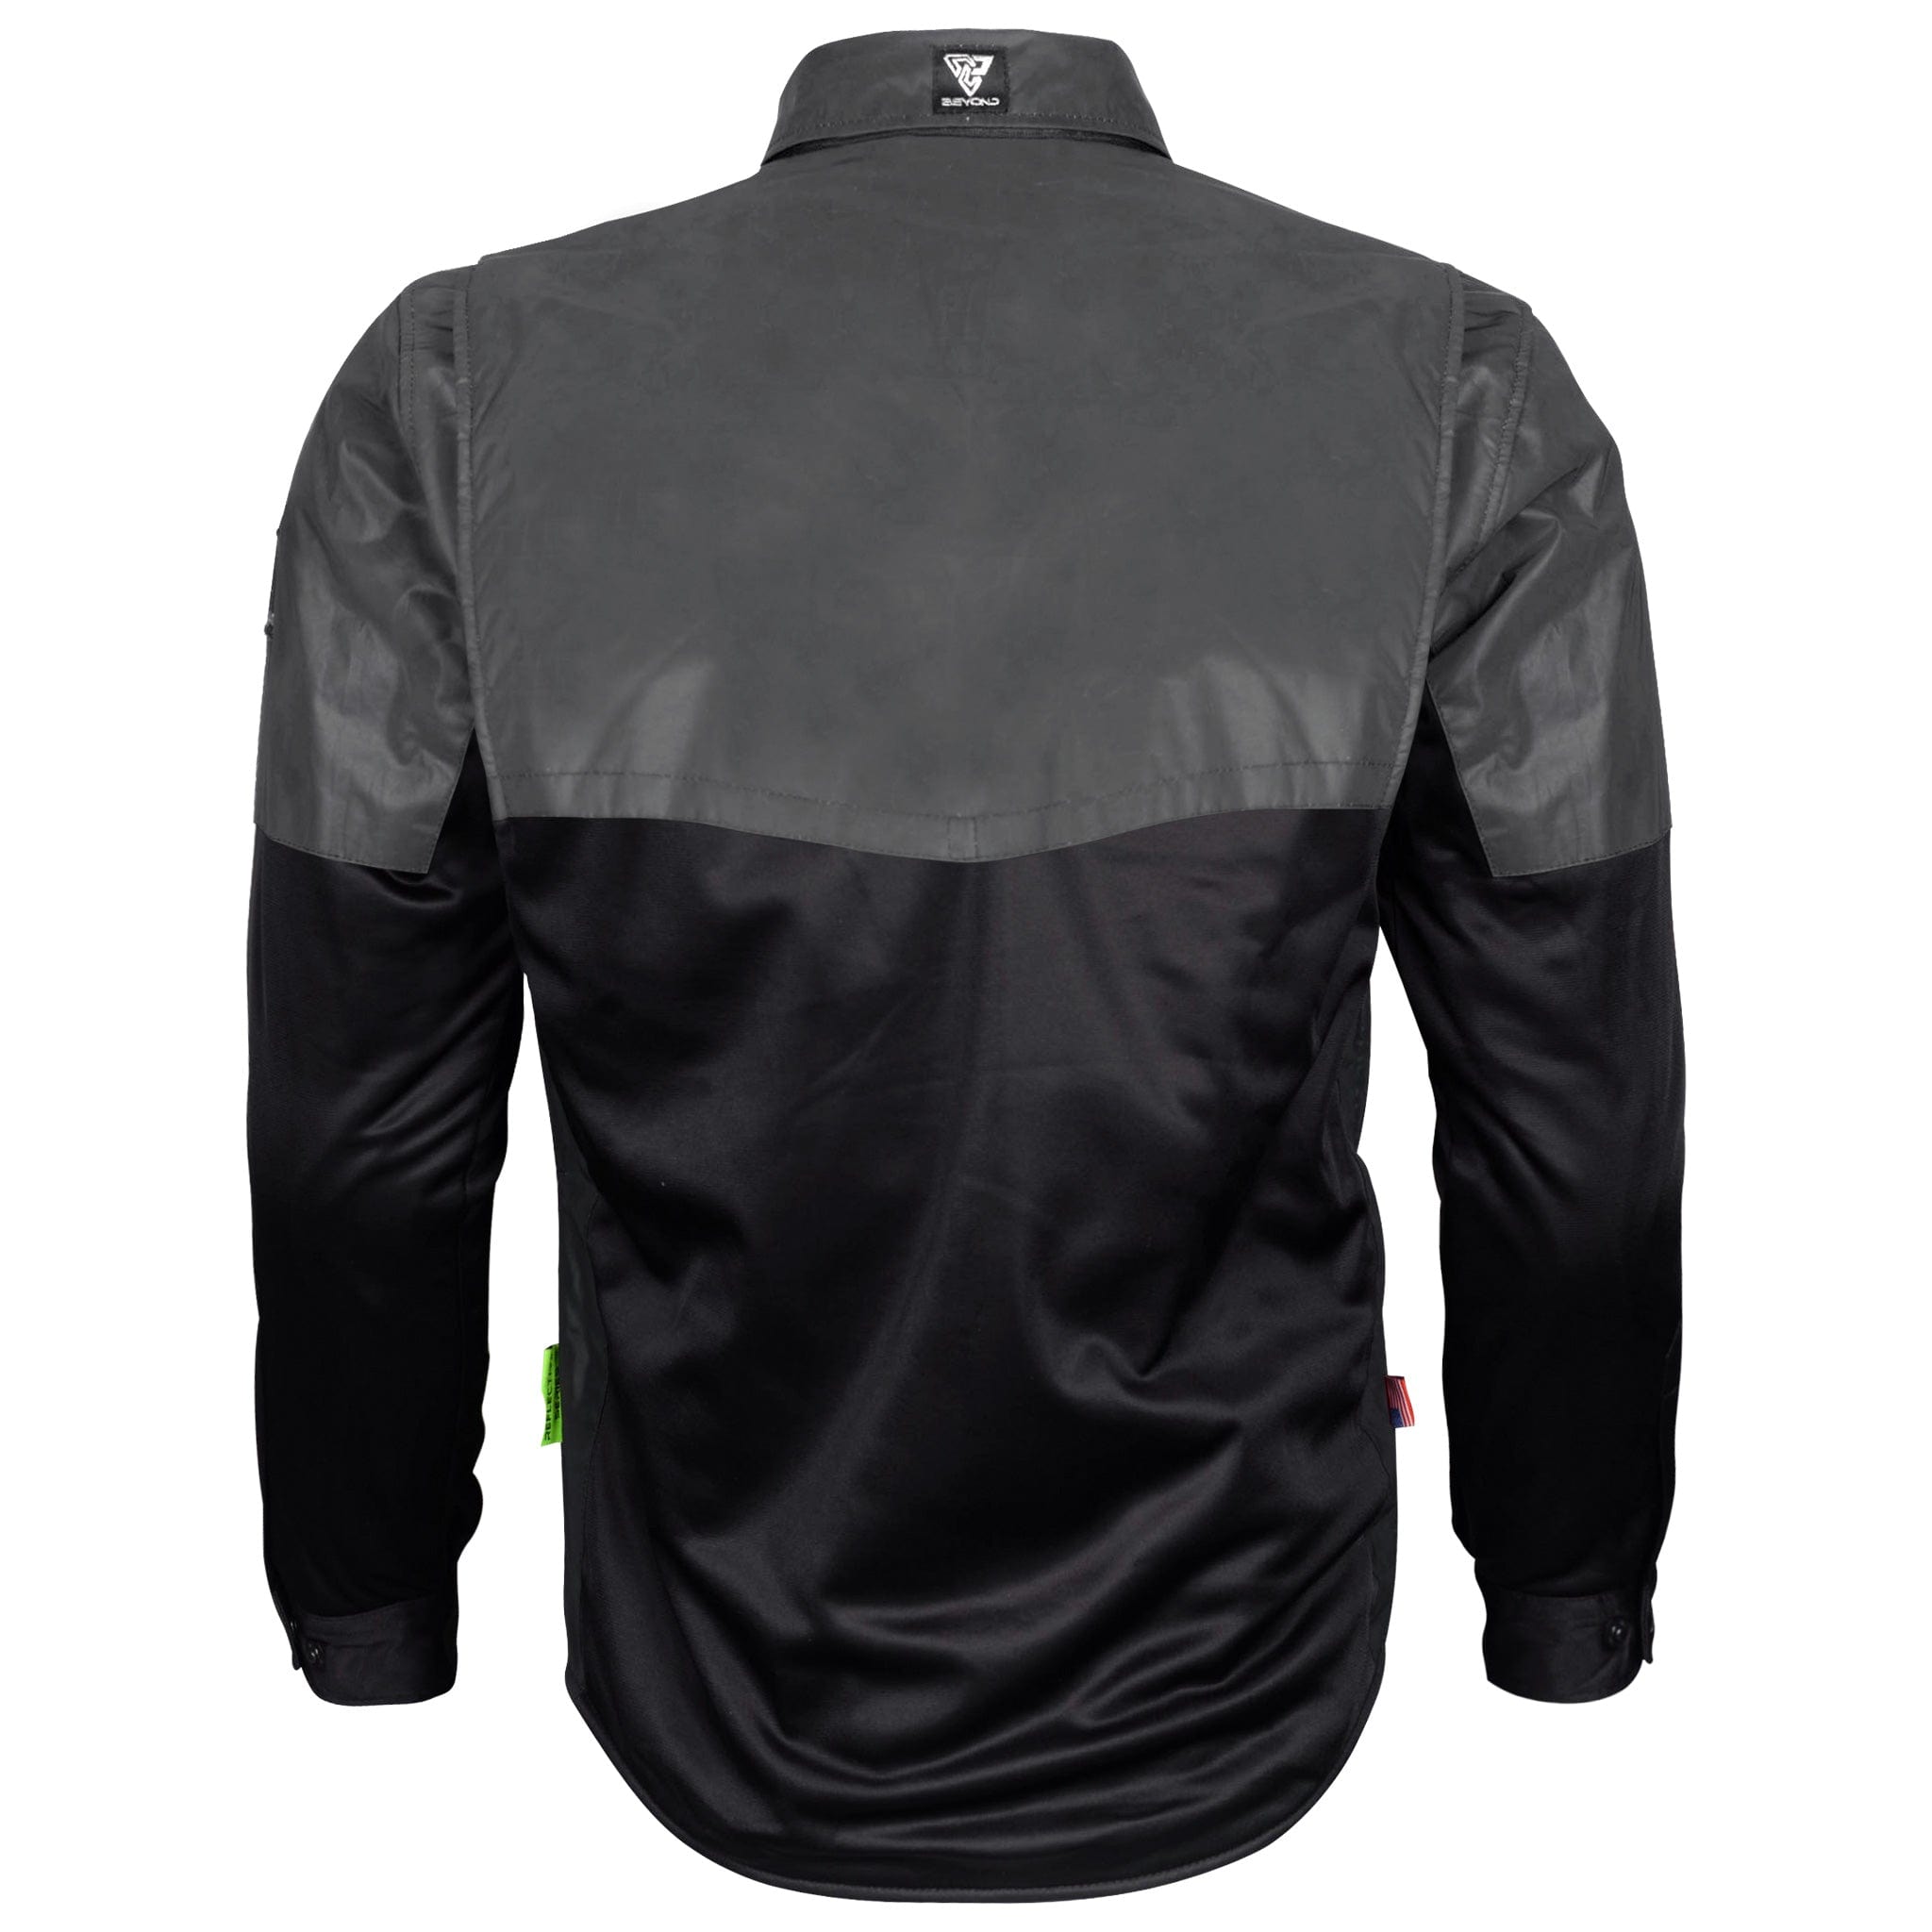 SALE Ultra Reflective Shirt "Nightfall Nebula" - Black with Pads